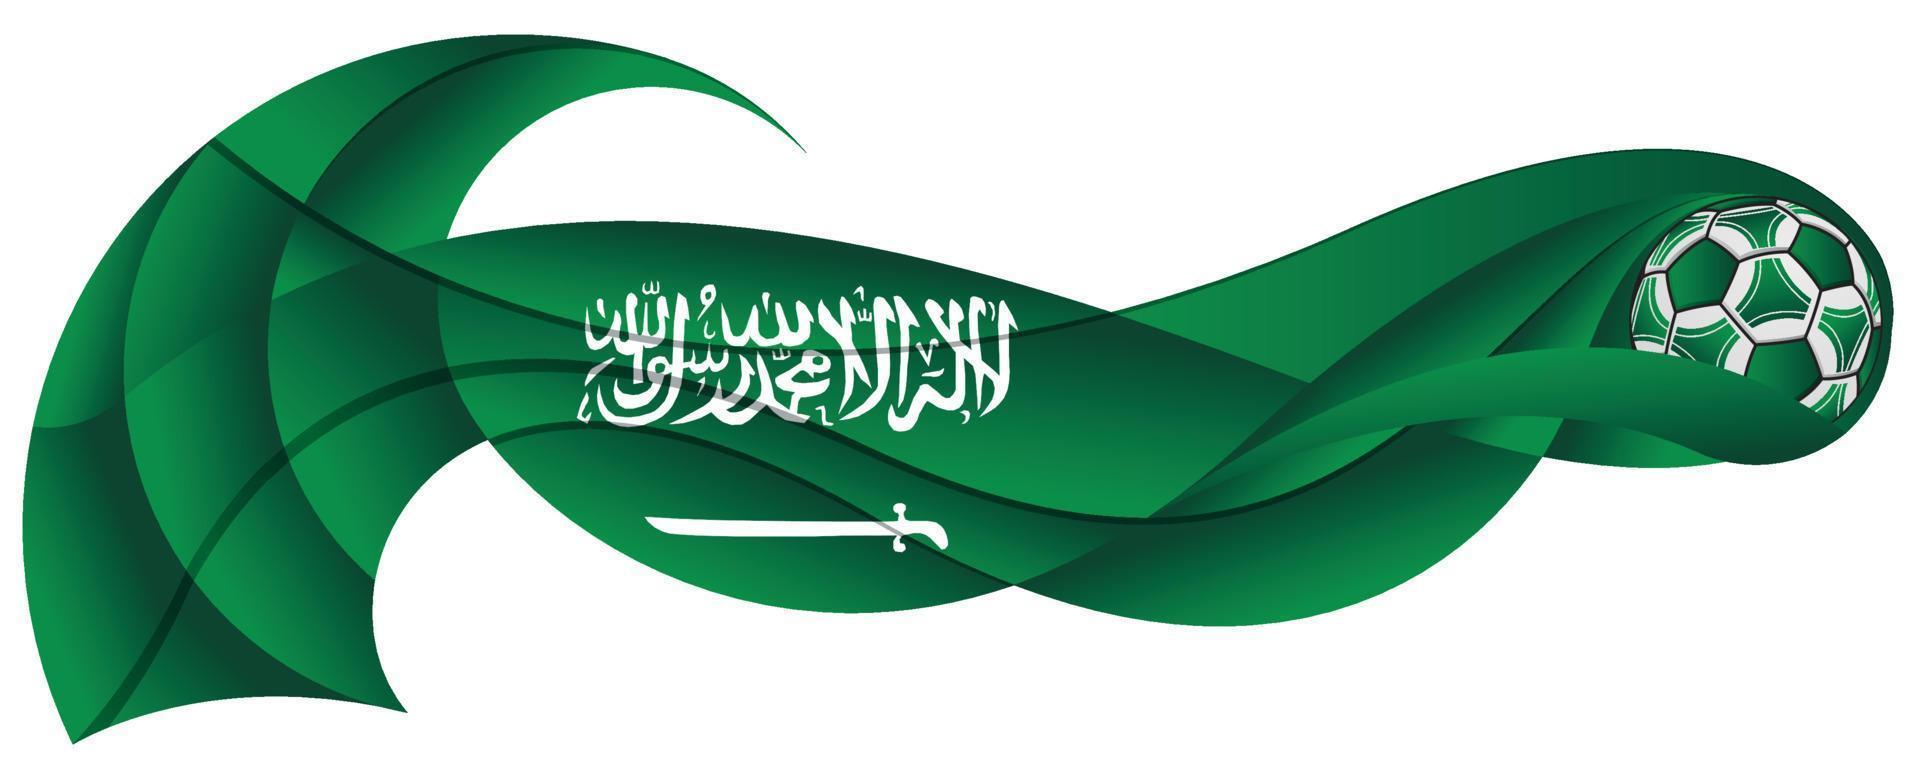 ballon de football vert et blanc laissant une traînée ondulée aux couleurs du drapeau saoudien vecteur